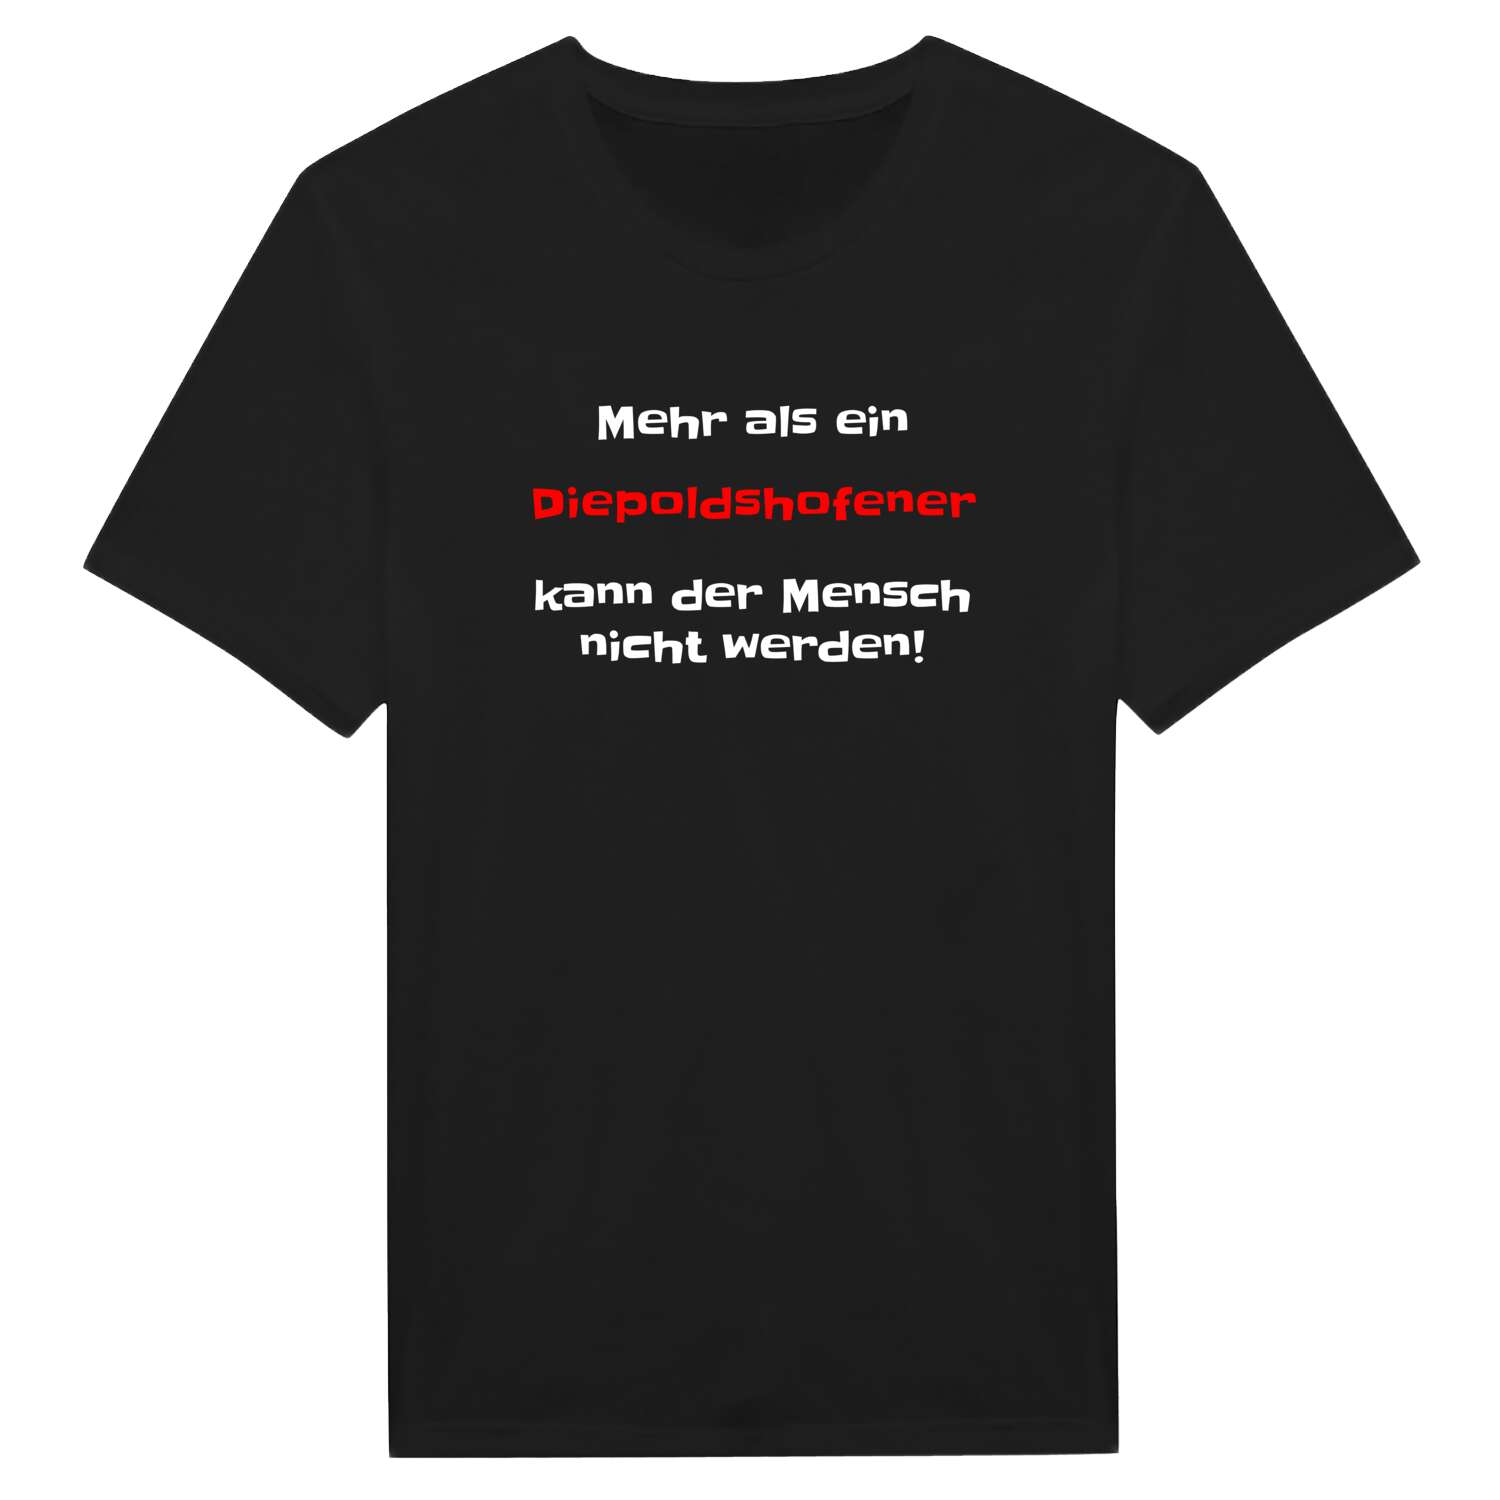 Diepoldshofen T-Shirt »Mehr als ein«